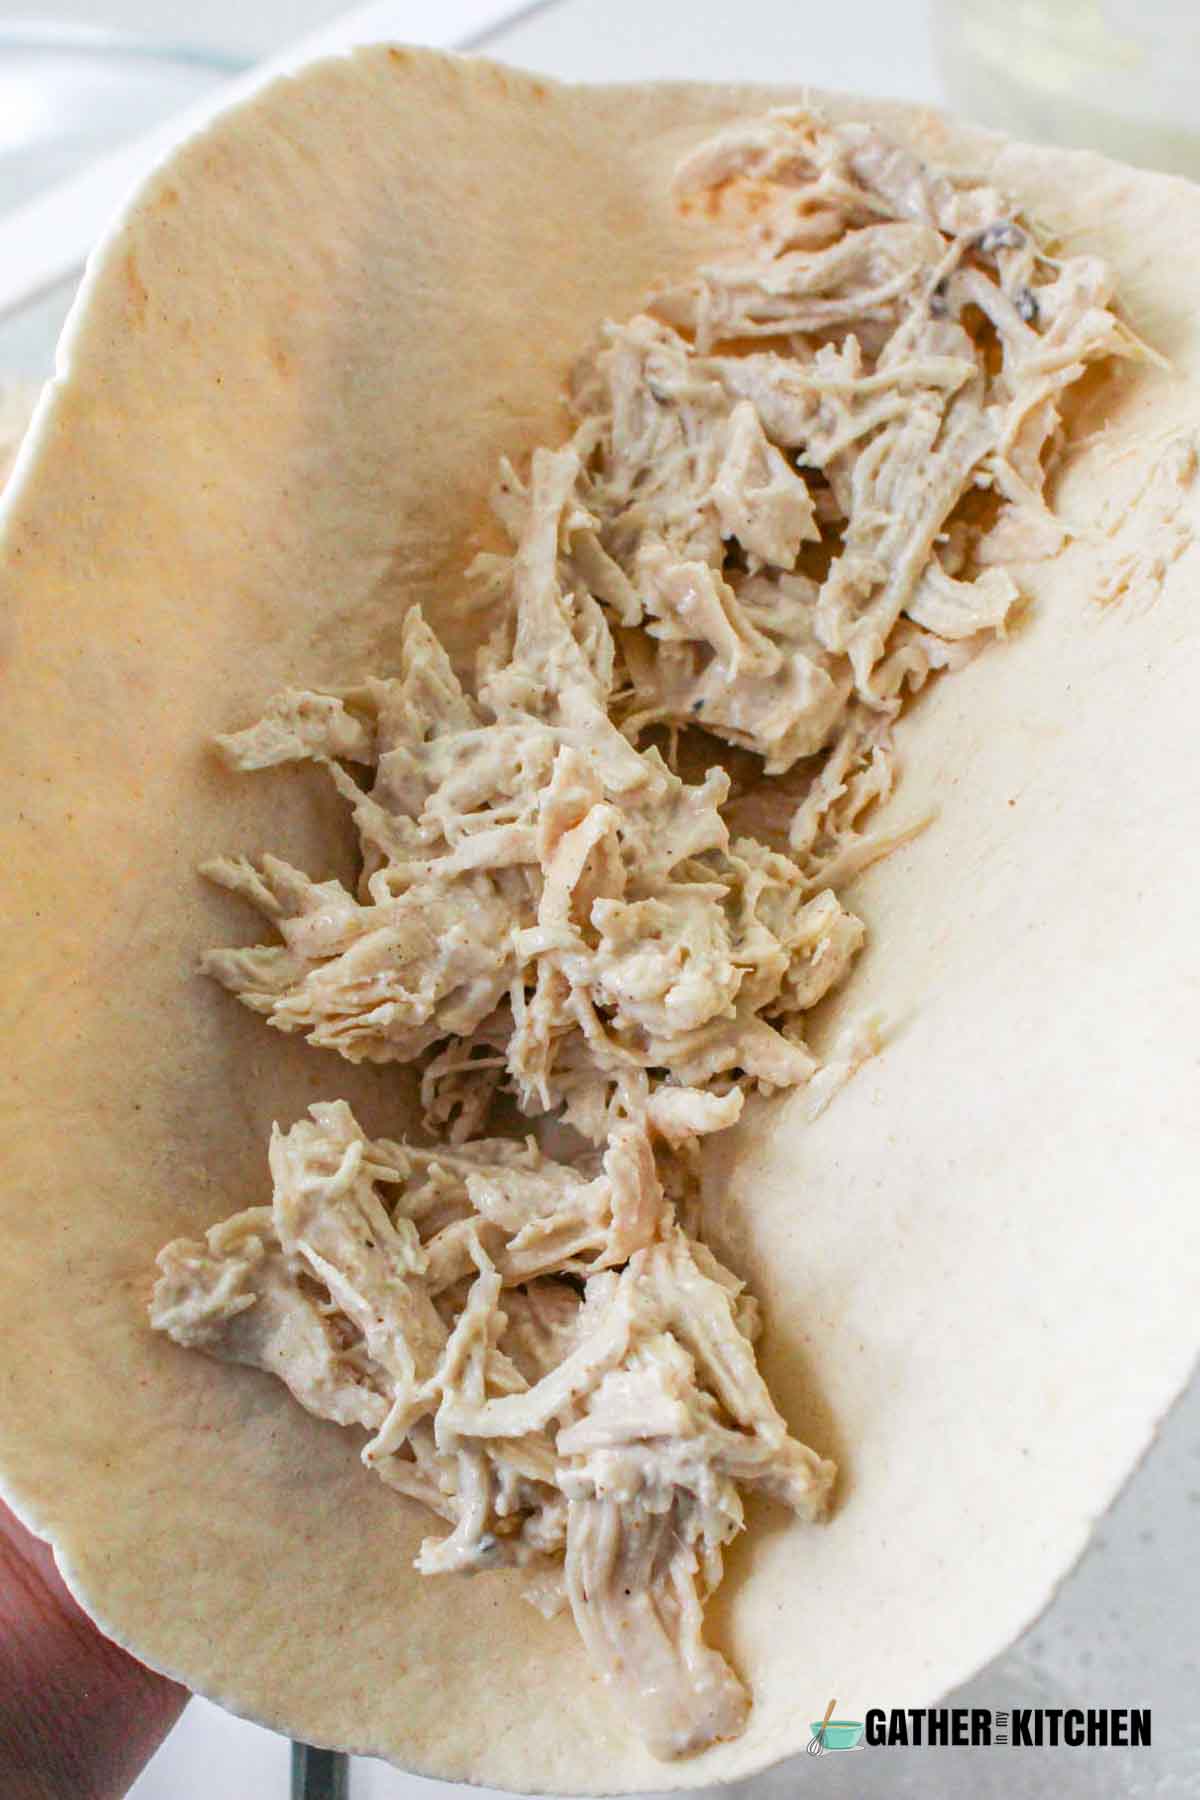 Shredded chicken on a tortilla.